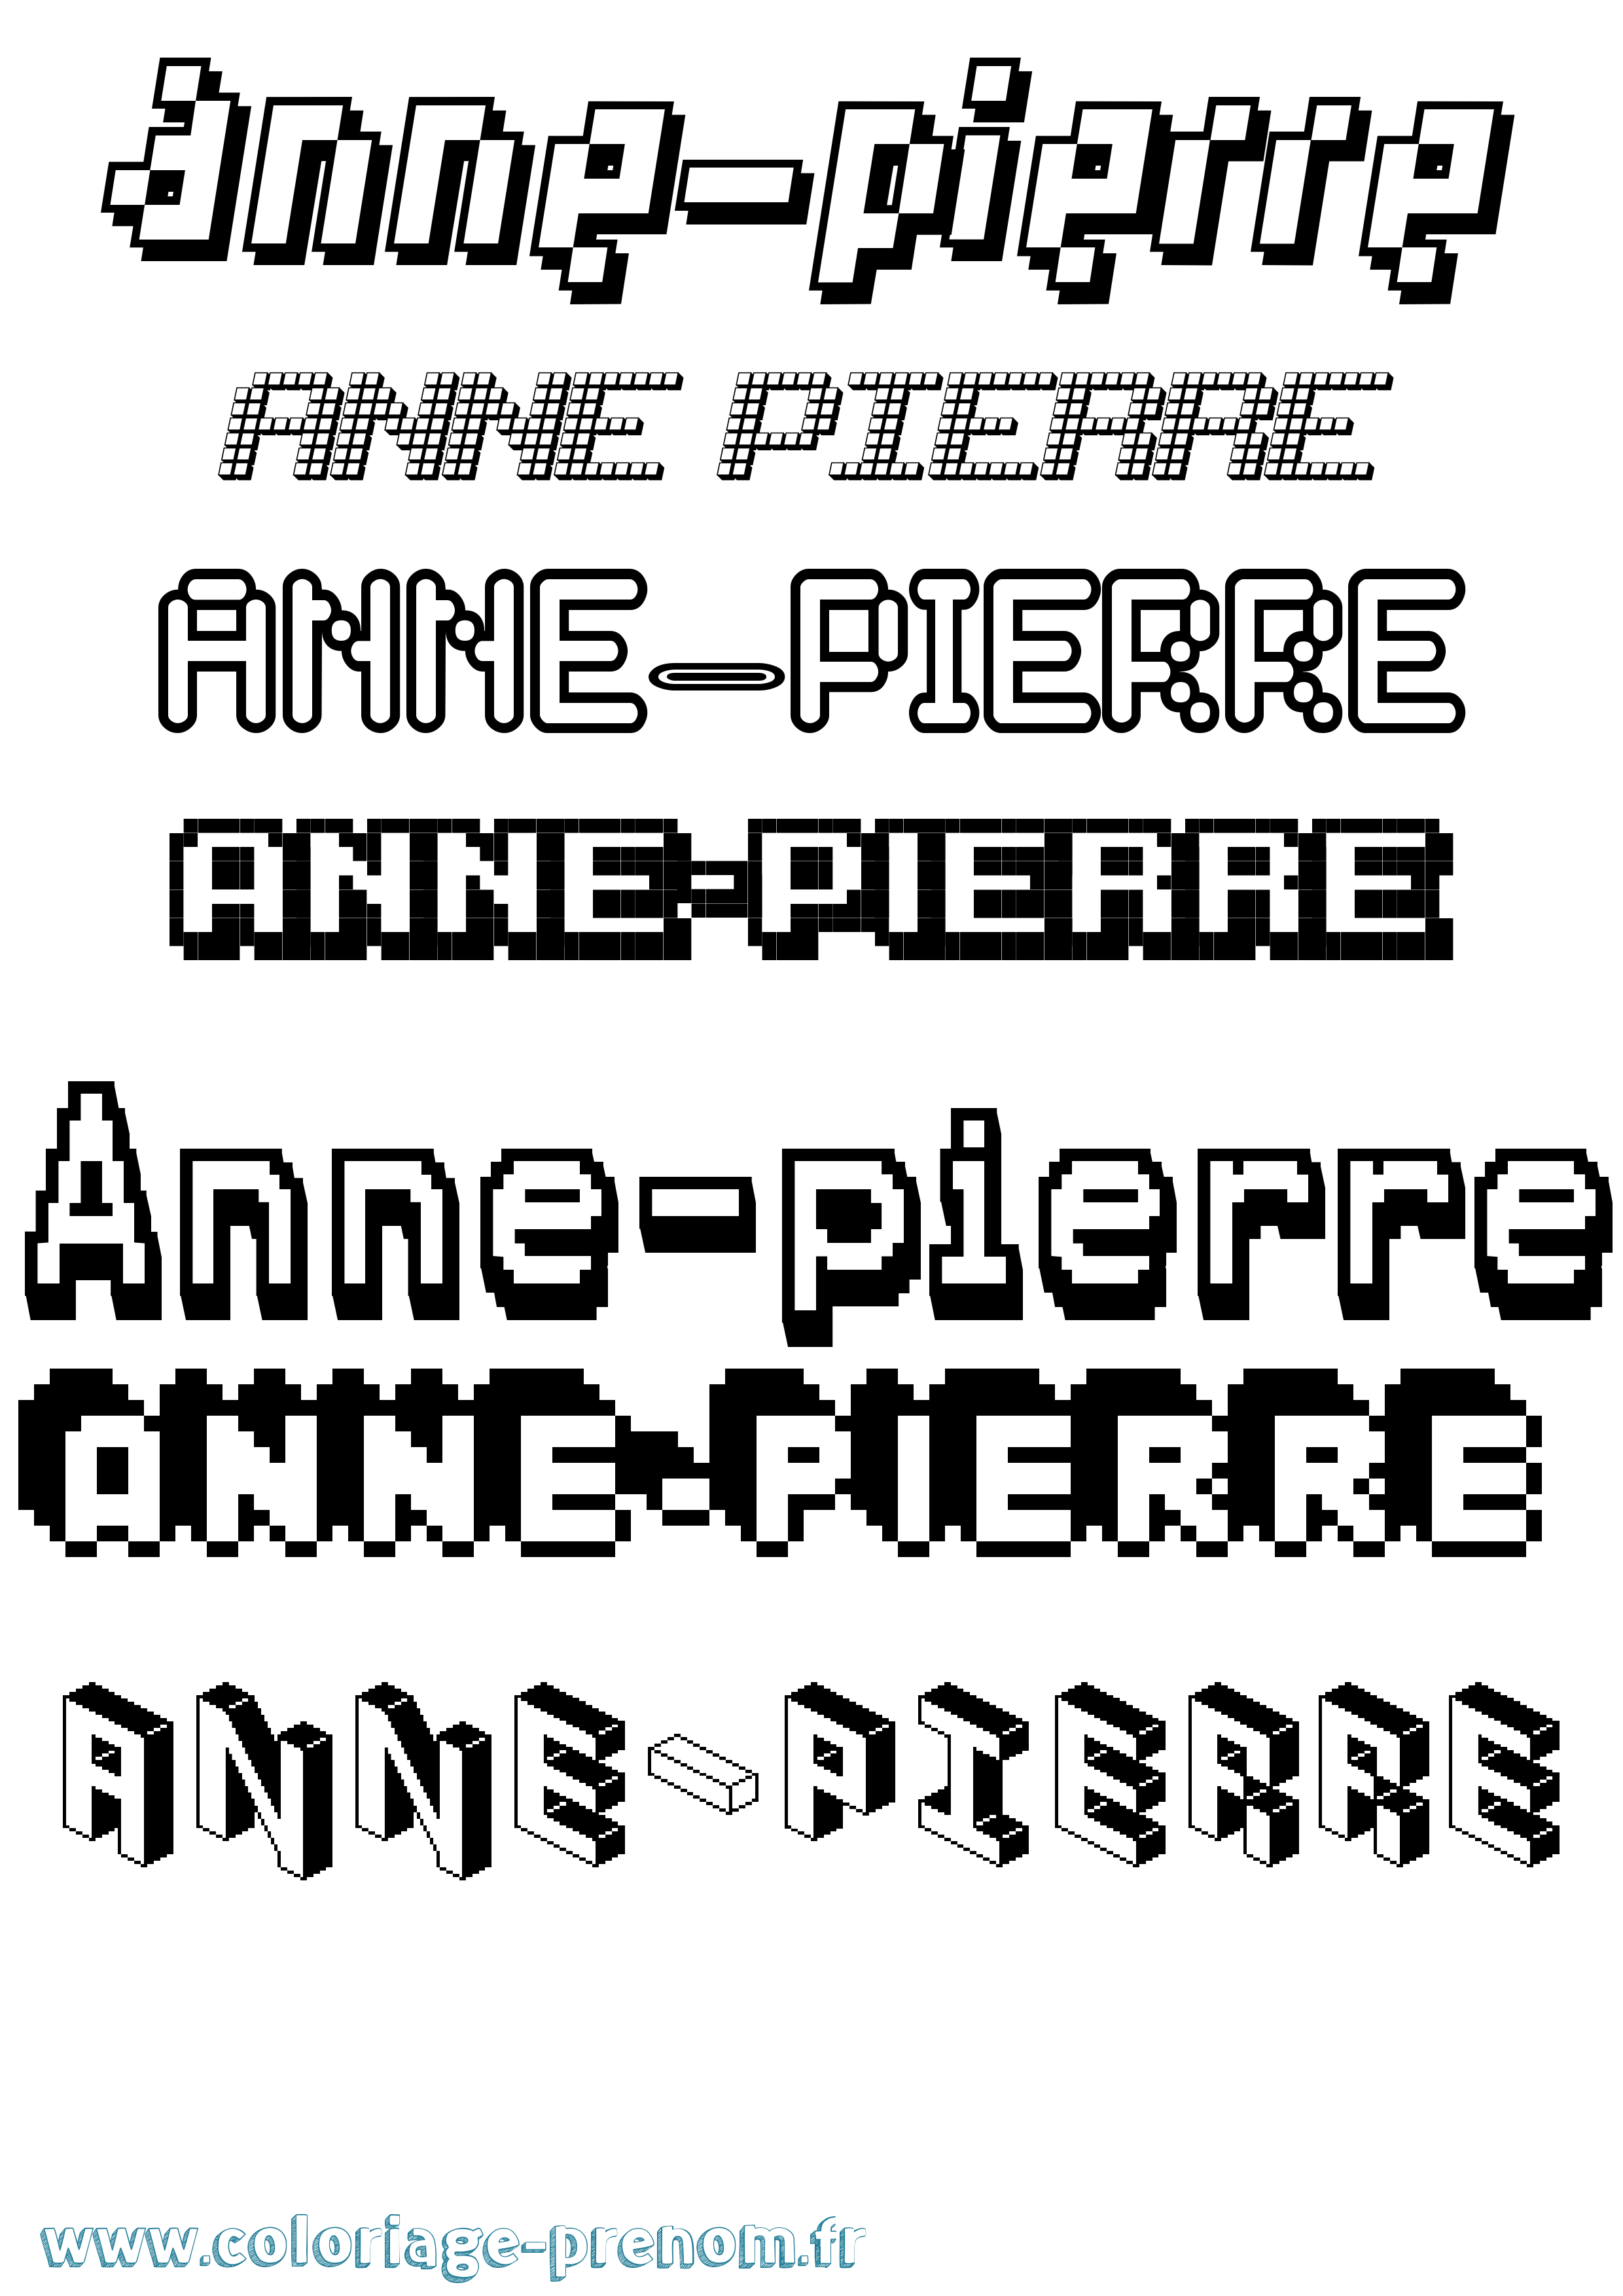 Coloriage prénom Anne-Pierre Pixel